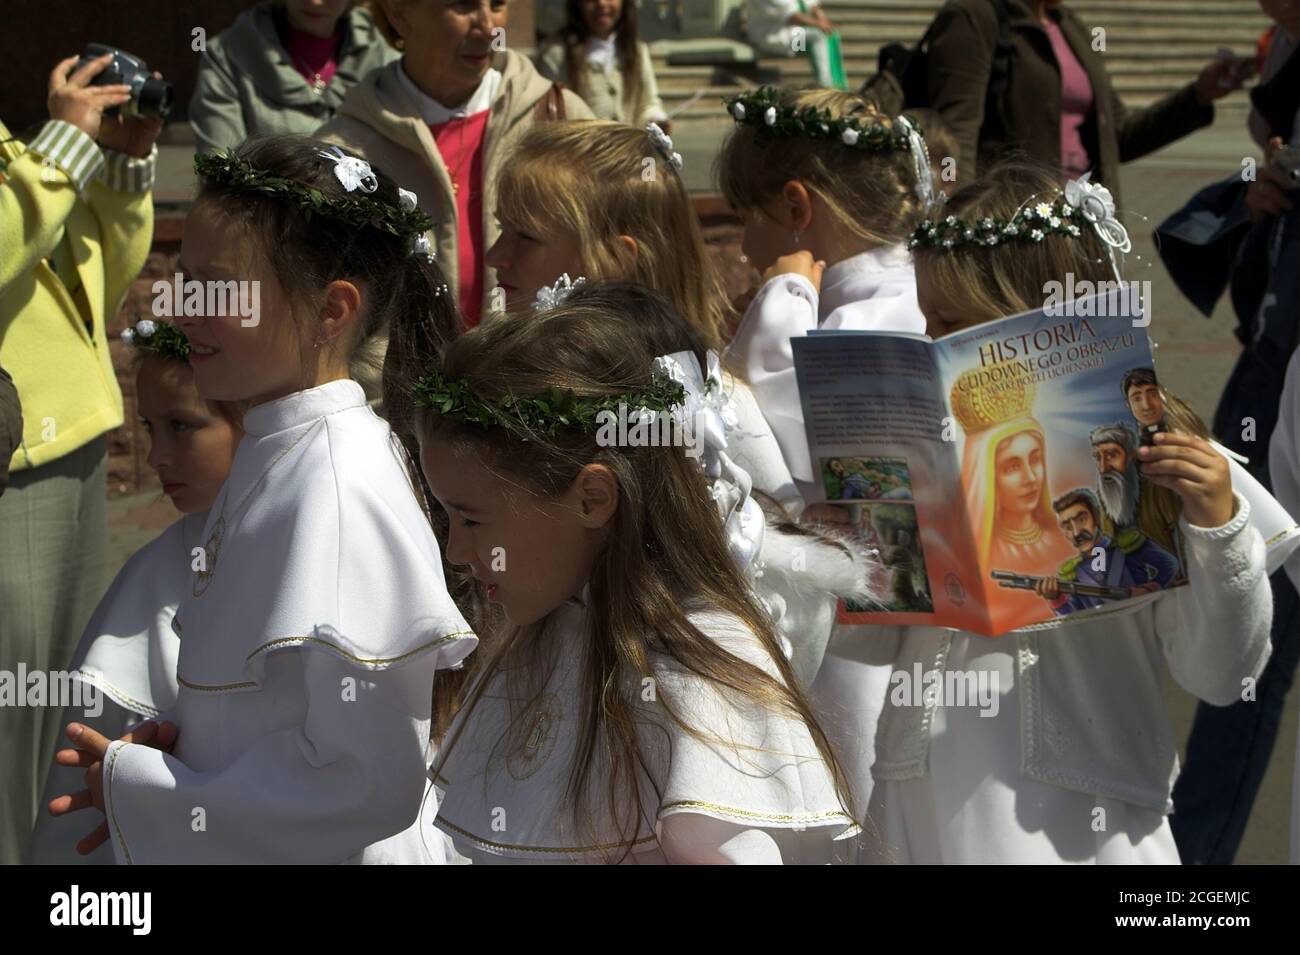 Polonia; ragazze in abiti bianchi di comunione e una corona sulla testa. La ragazza è avvincita, assorbita nella lettura. Mädchen in weißen Kommunionkleidern. Foto Stock